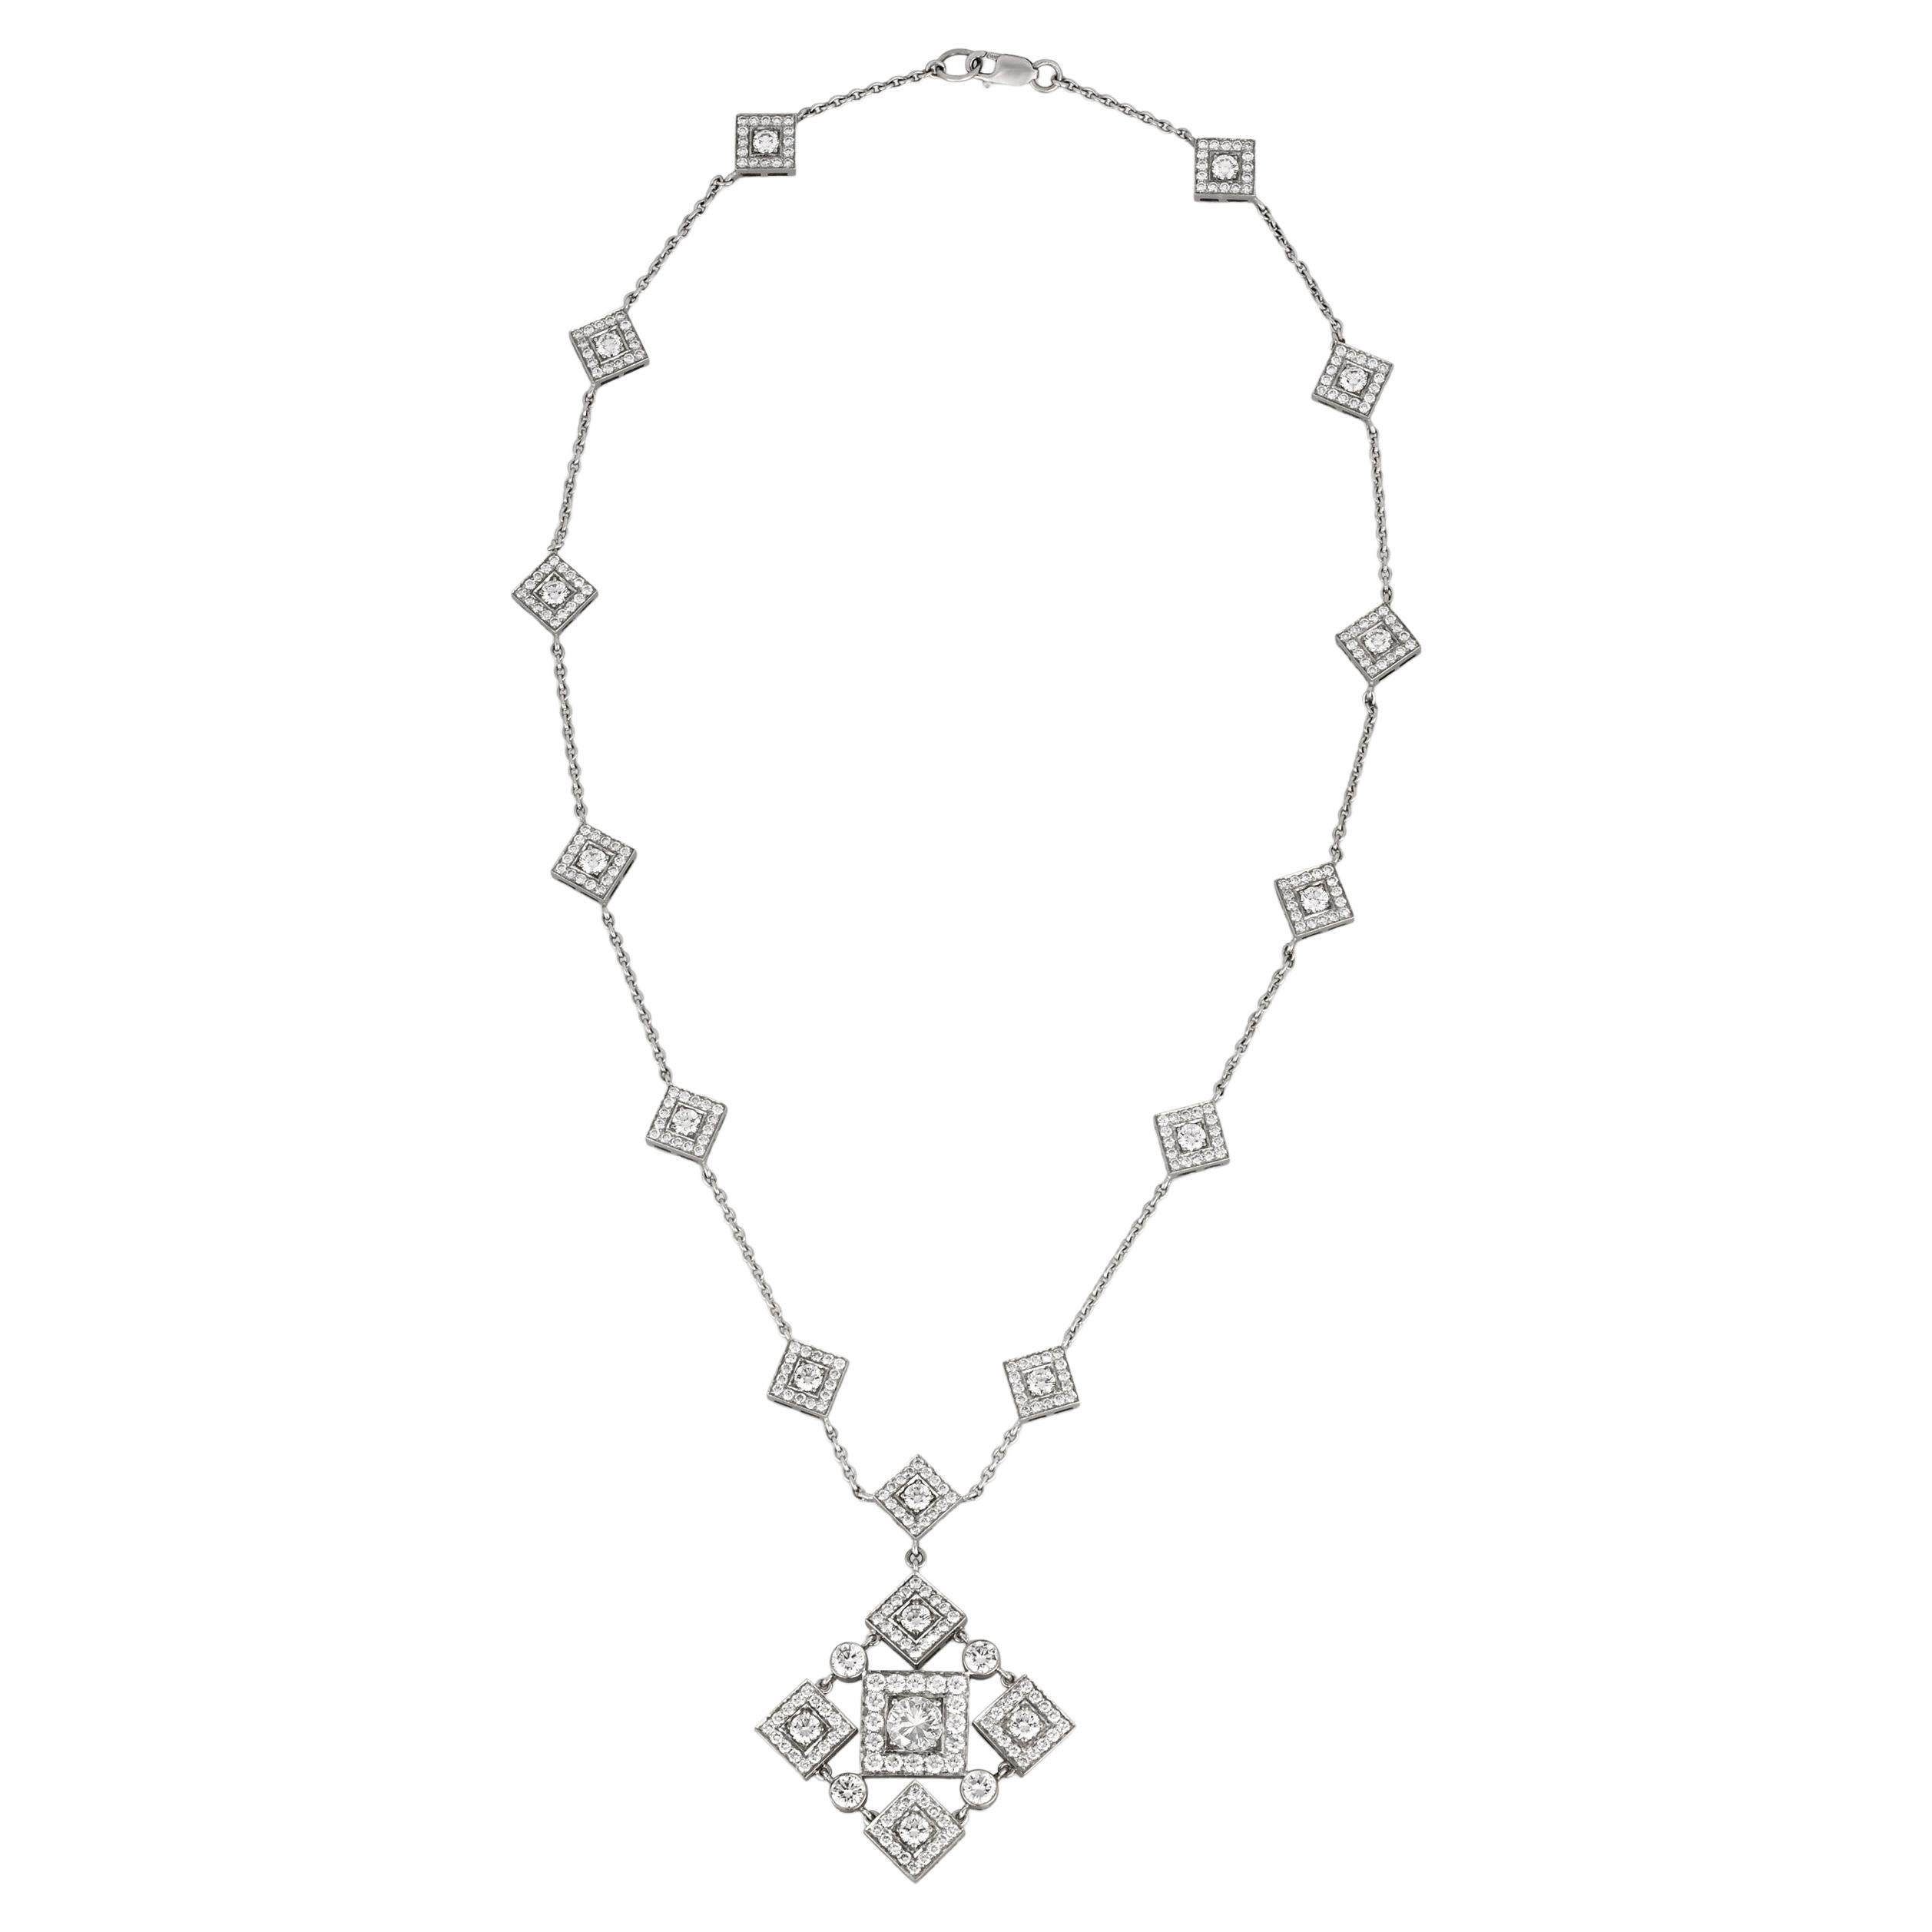 Geometric Diamond Pendant Necklace, 6.43 Carats